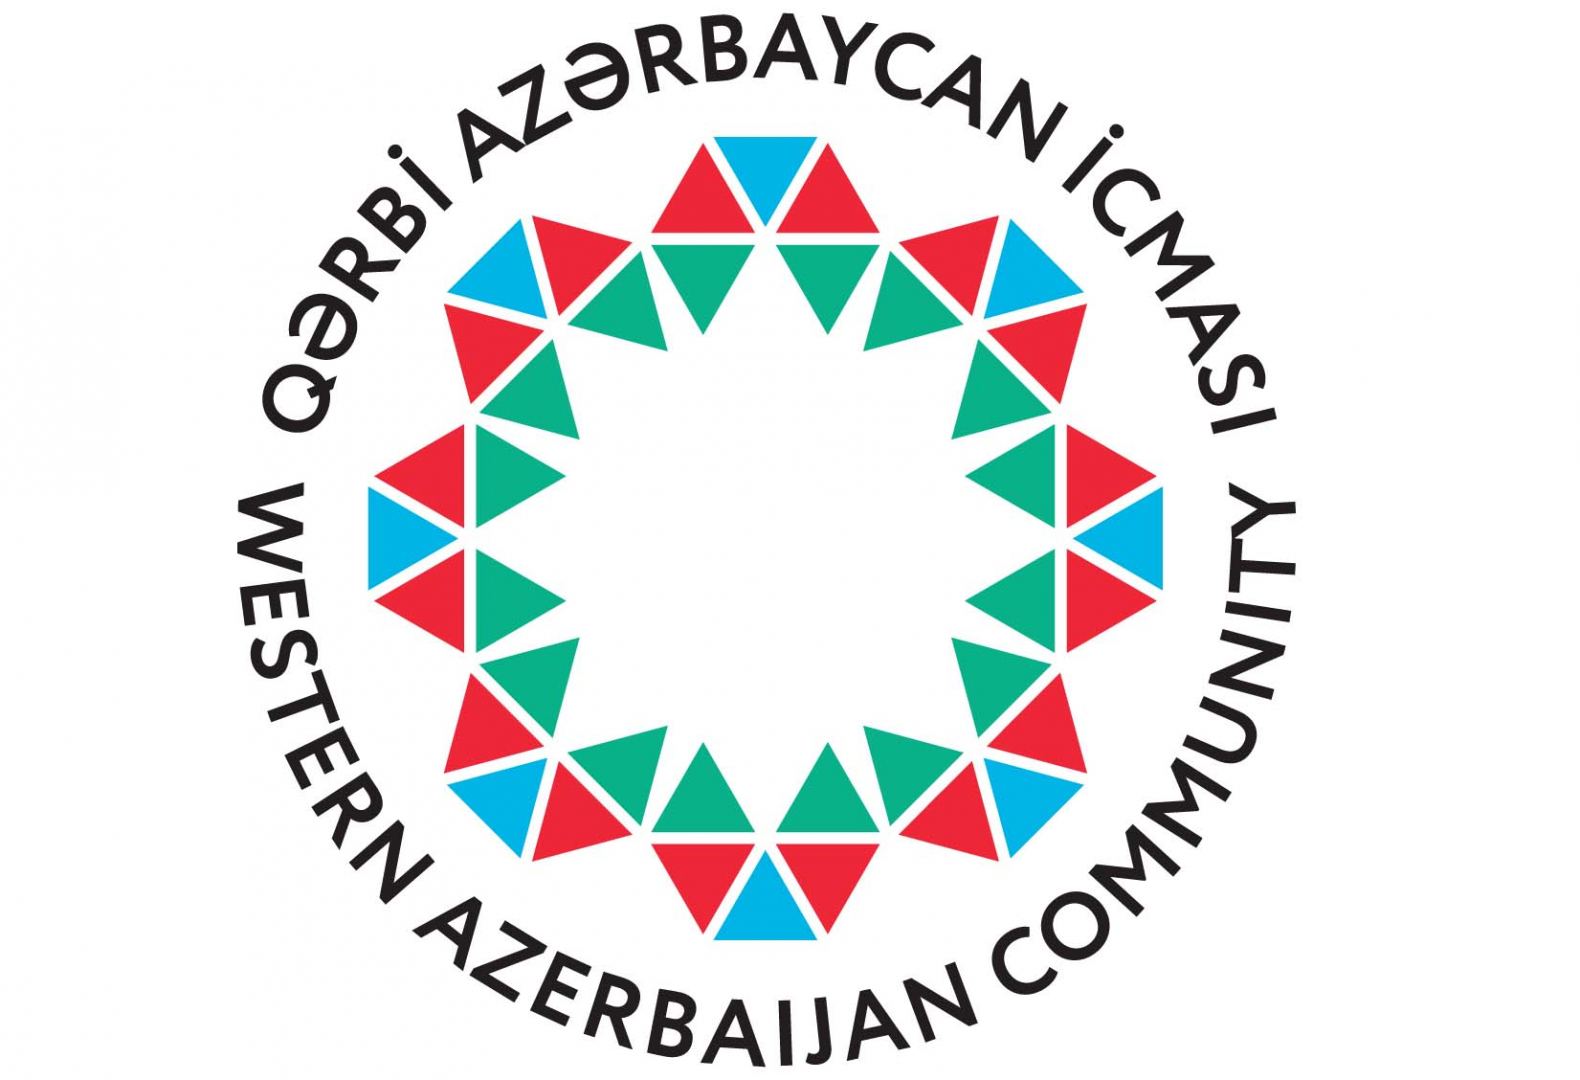 La communauté azerbaïdjanaise occidentale a publié une déclaration concernant les ventes d’armes françaises à l’Arménie